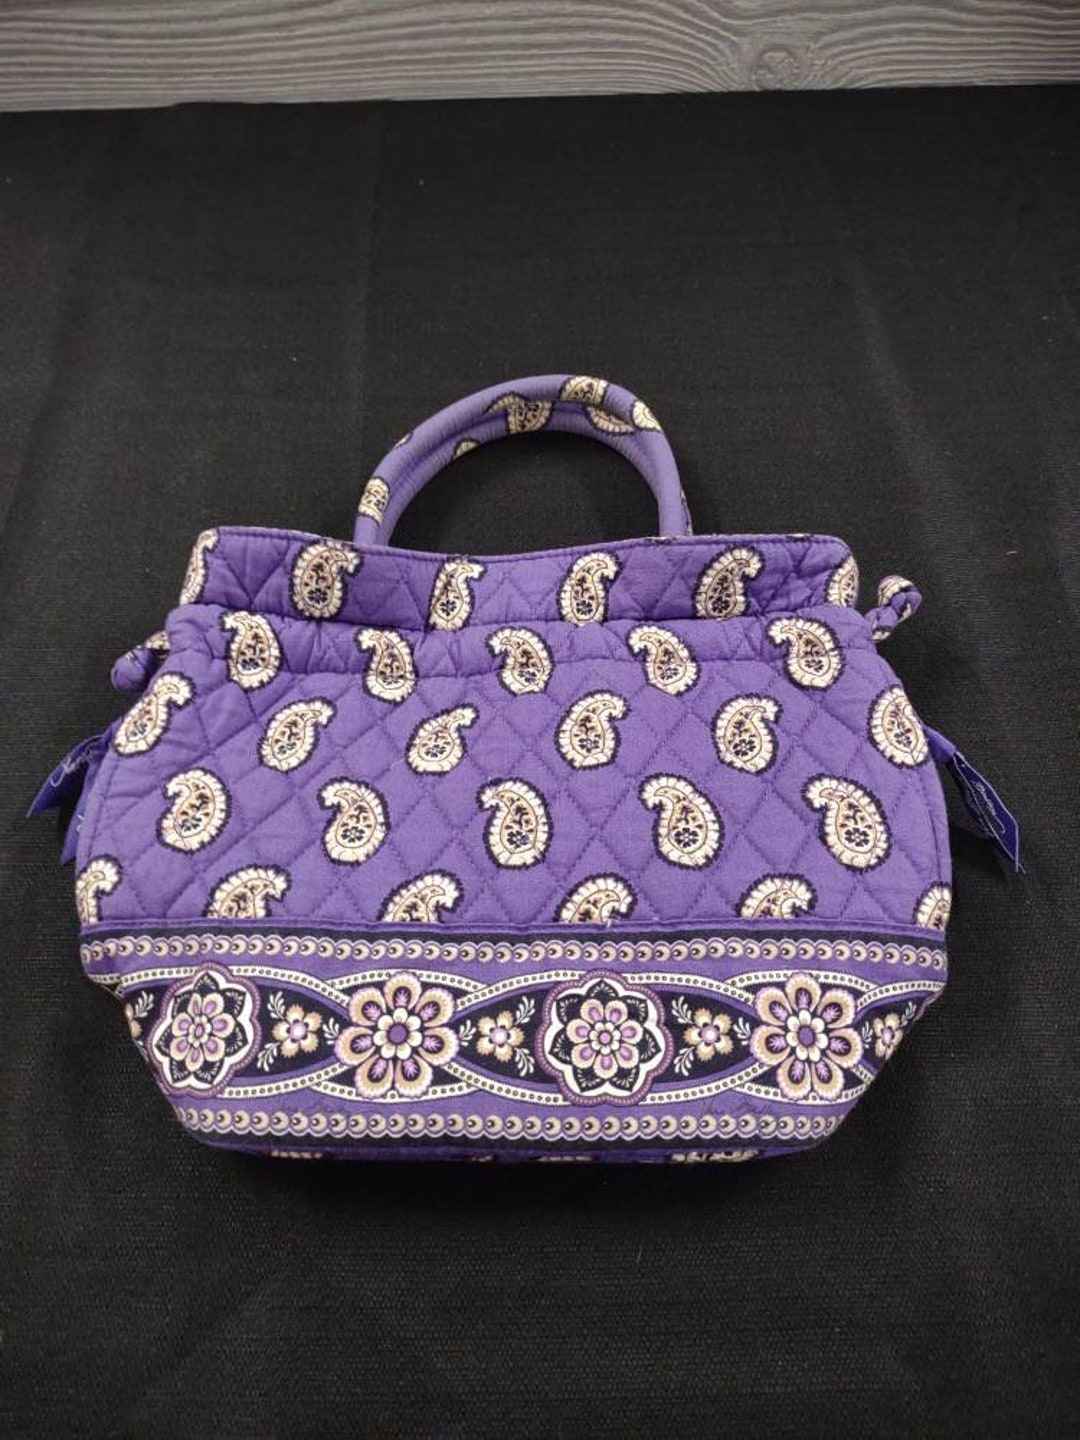 Vtg Vera Bradley Top Handle Handbag Simply Violet Pouch Purse - Etsy